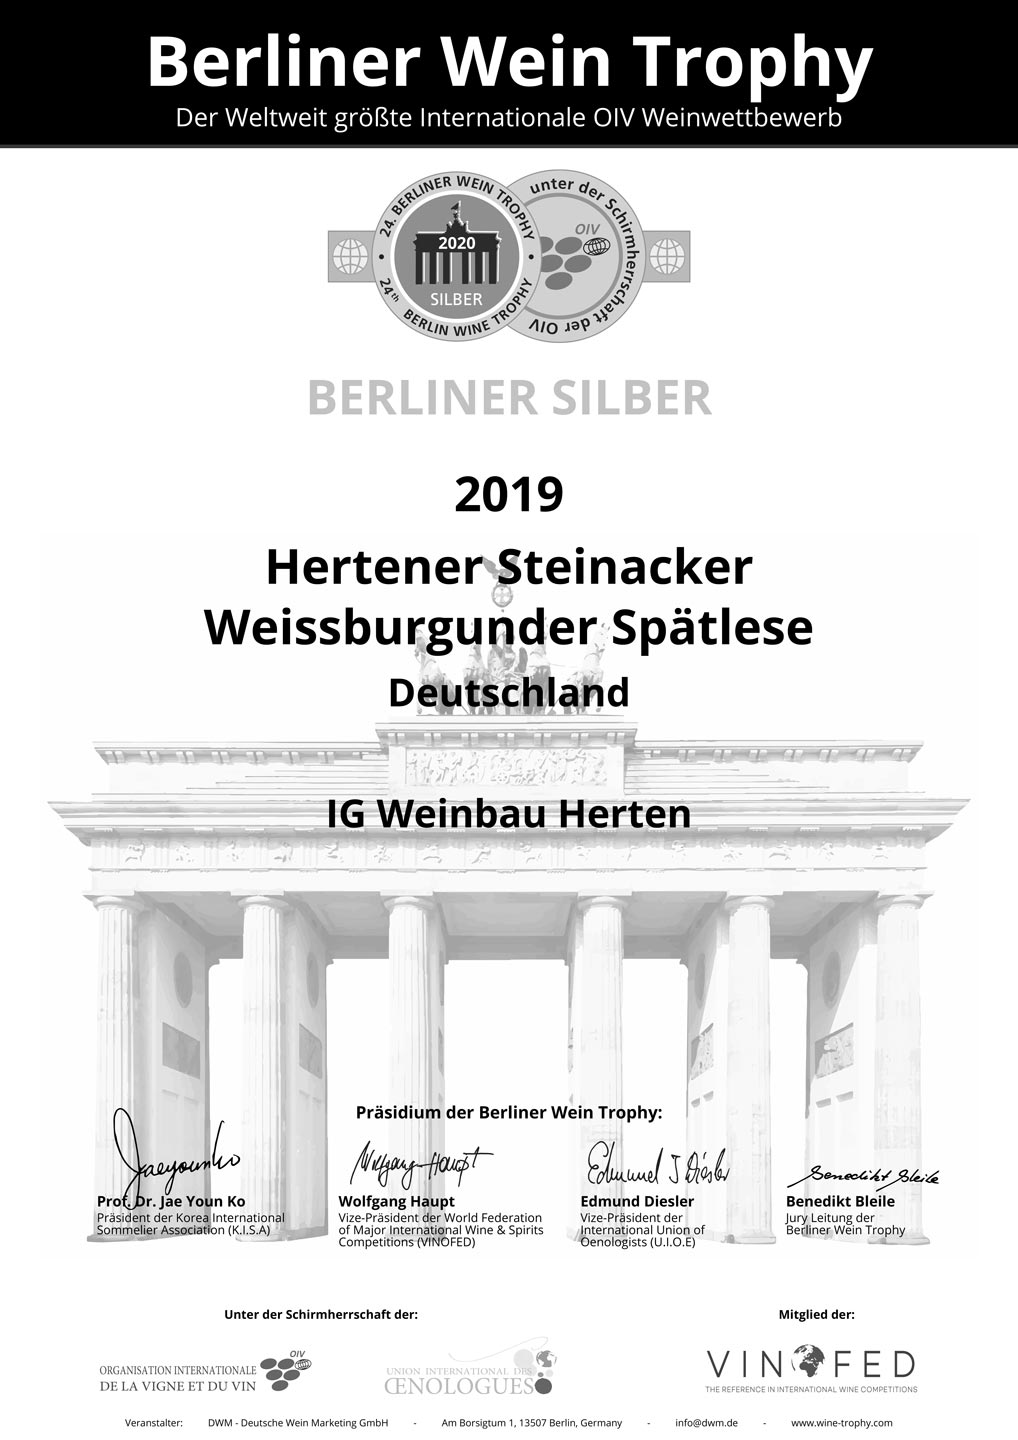 Silbermedaille für Hertener Steinacker Weissburgunder Spätlese Jahrgang 2019